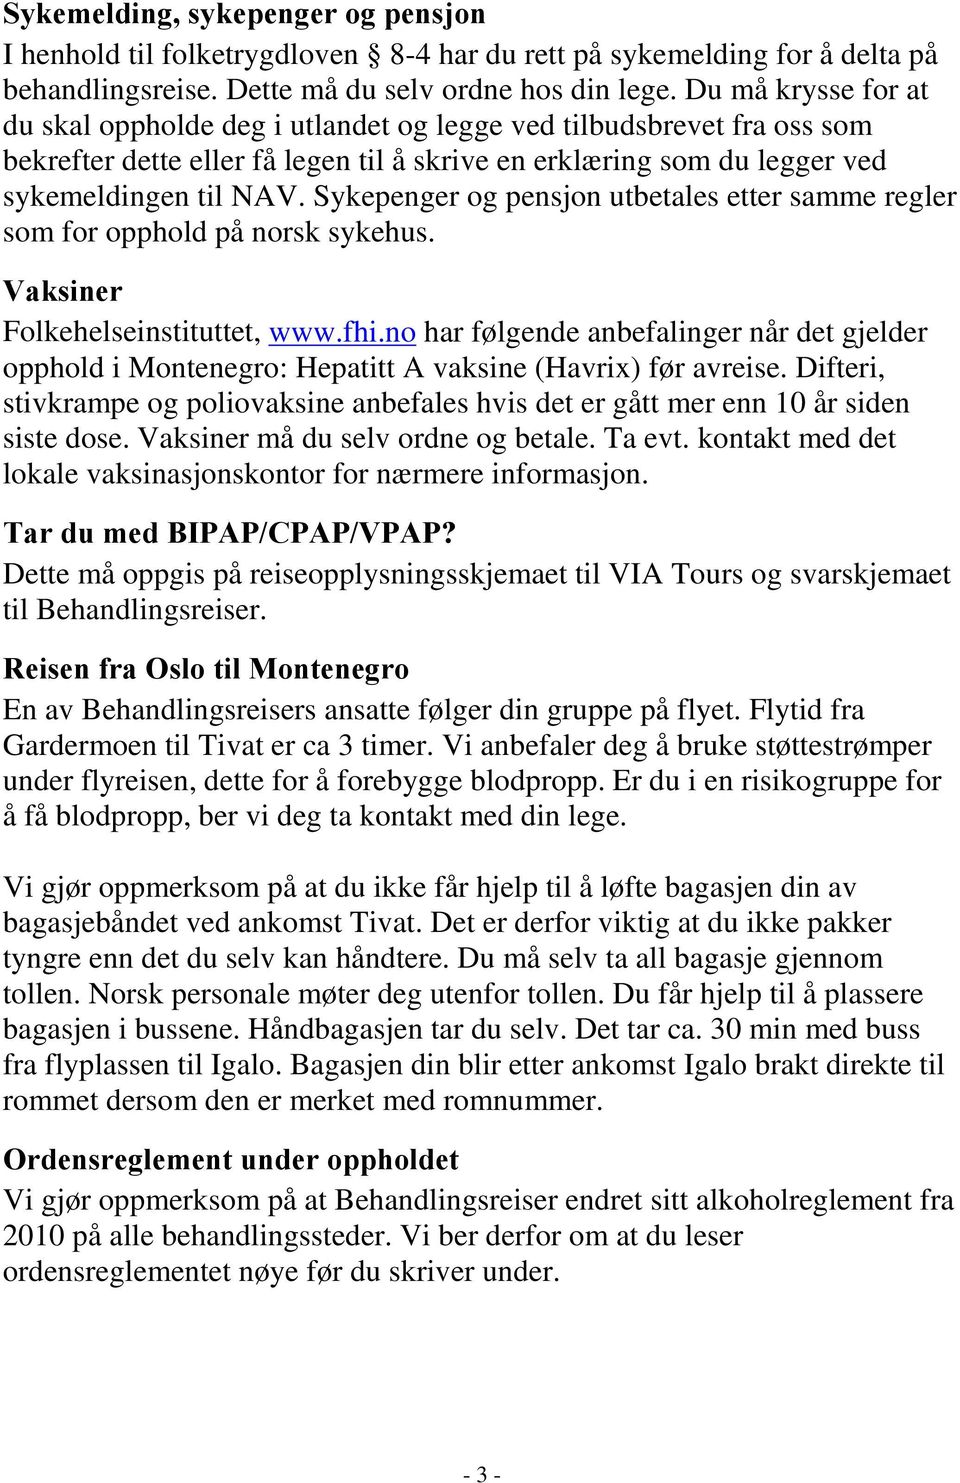 Sykepenger og pensjon utbetales etter samme regler som for opphold på norsk sykehus. Vaksiner Folkehelseinstituttet, www.fhi.